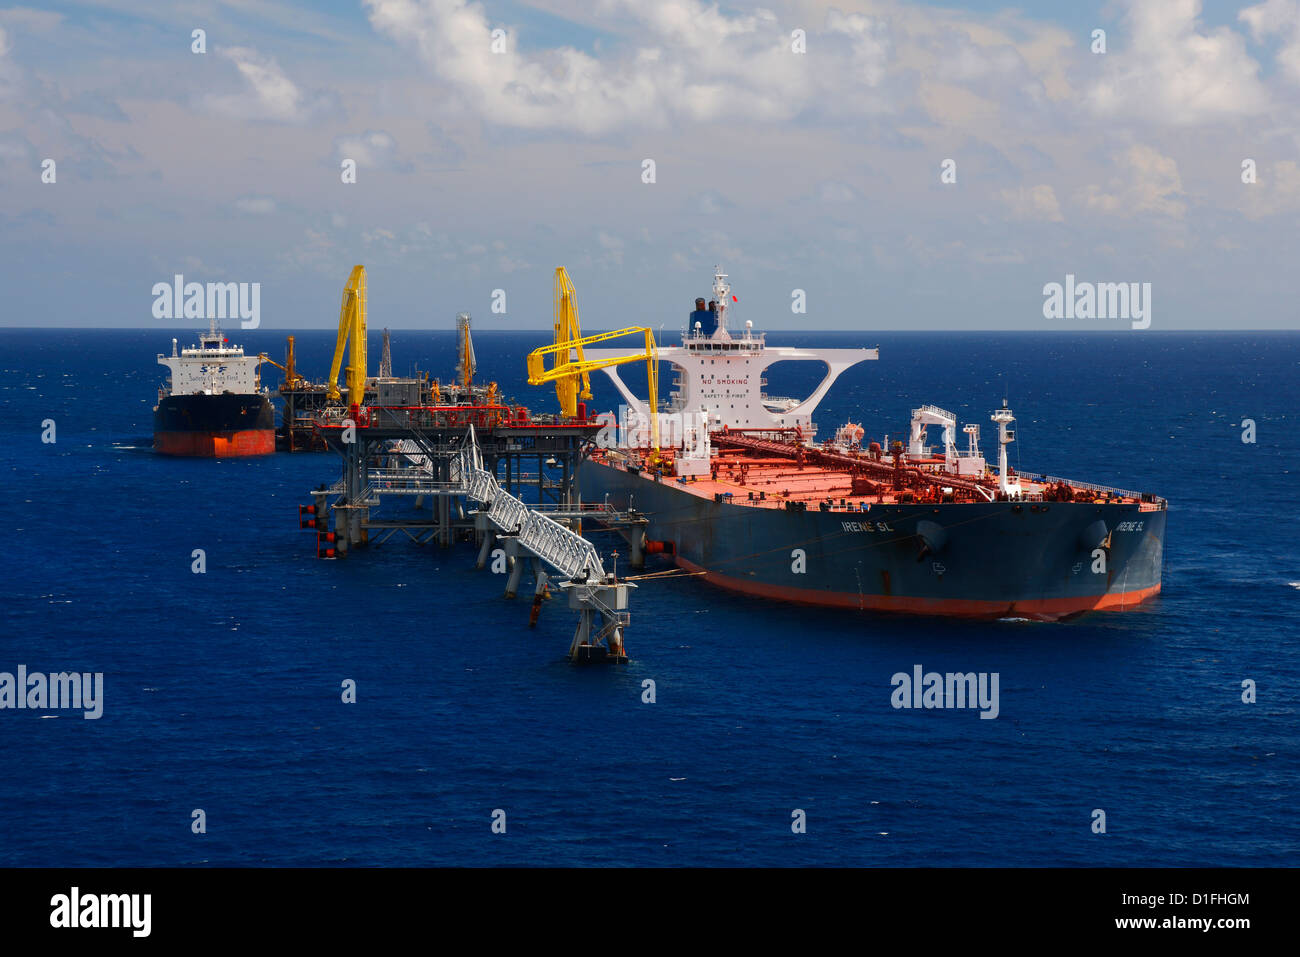 Tanker loading oil. Freeport - Bahamas. Stock Photo